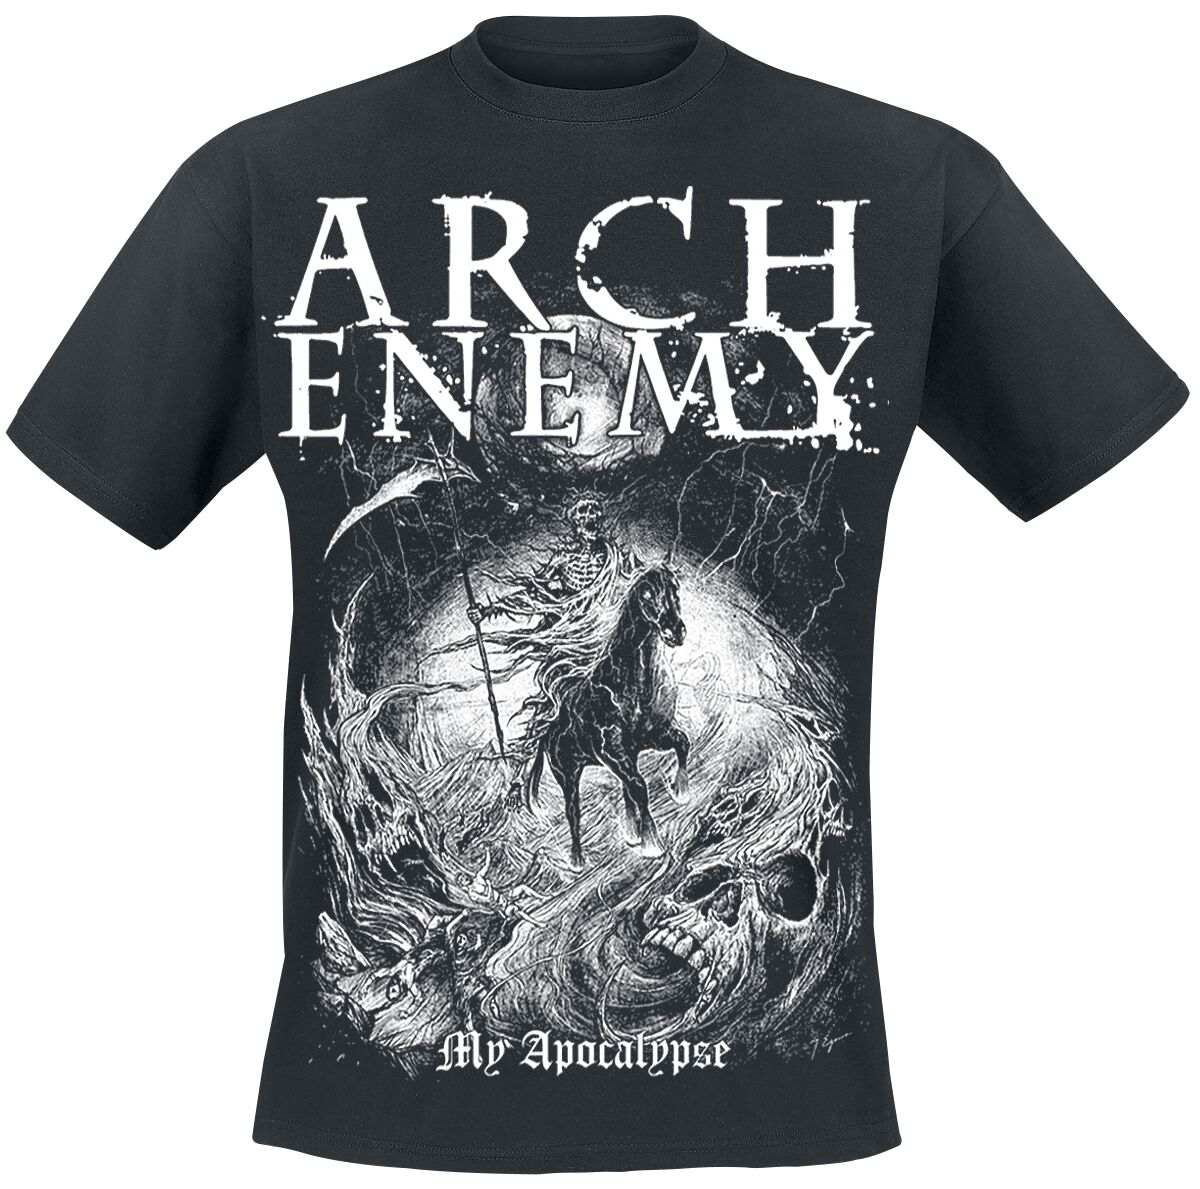 Arch Enemy T-Shirt - My Apocalypse - S bis 5XL - für Männer - Größe 3XL - schwarz  - Lizenziertes Merchandise!